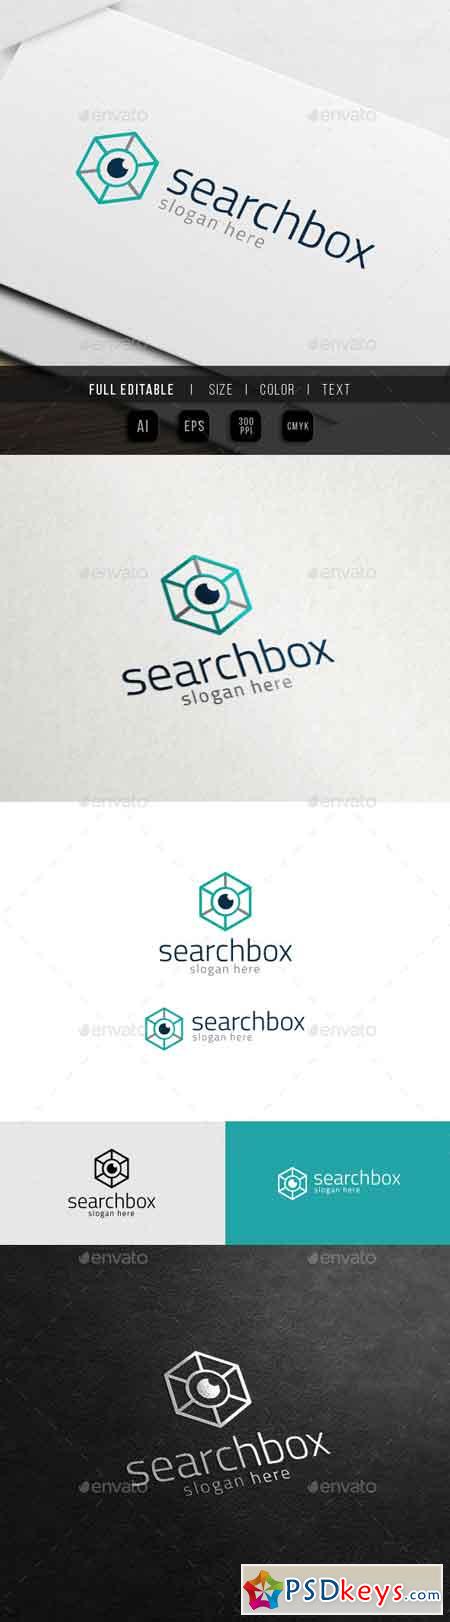 Eye Box SEO - Hexa Research Logo 10988043